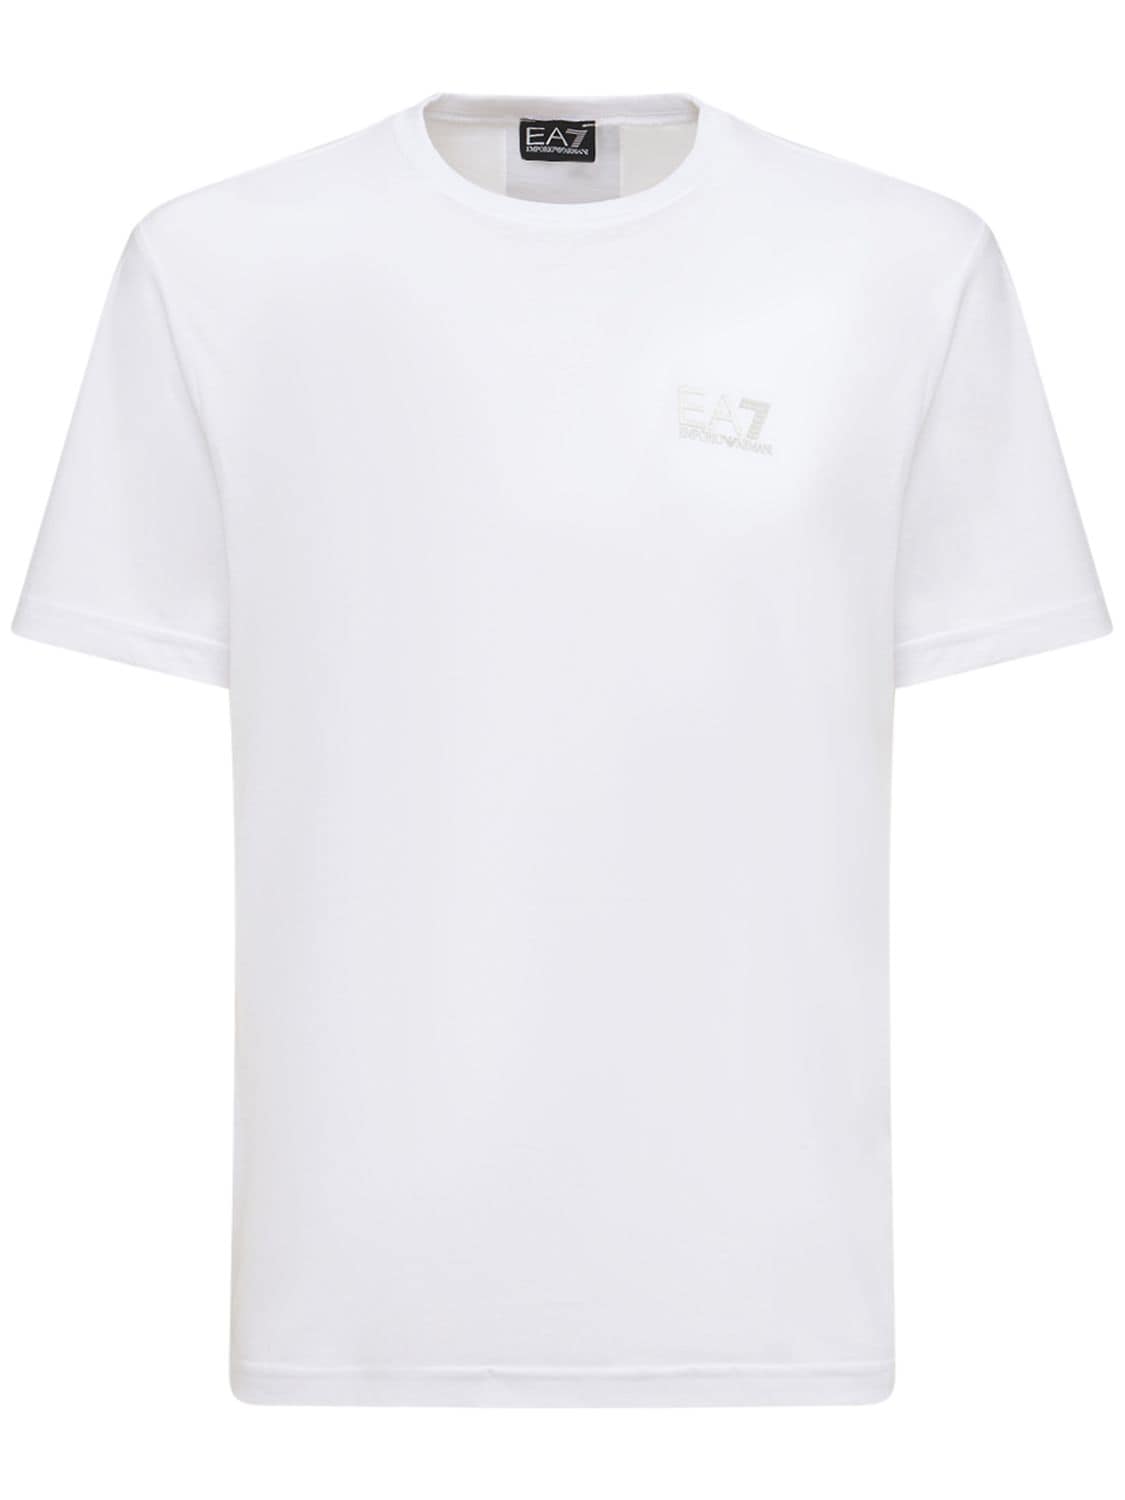 T-shirt Series In Jersey Di Cotone Con Logo - EA7 EMPORIO ARMANI - Modalova